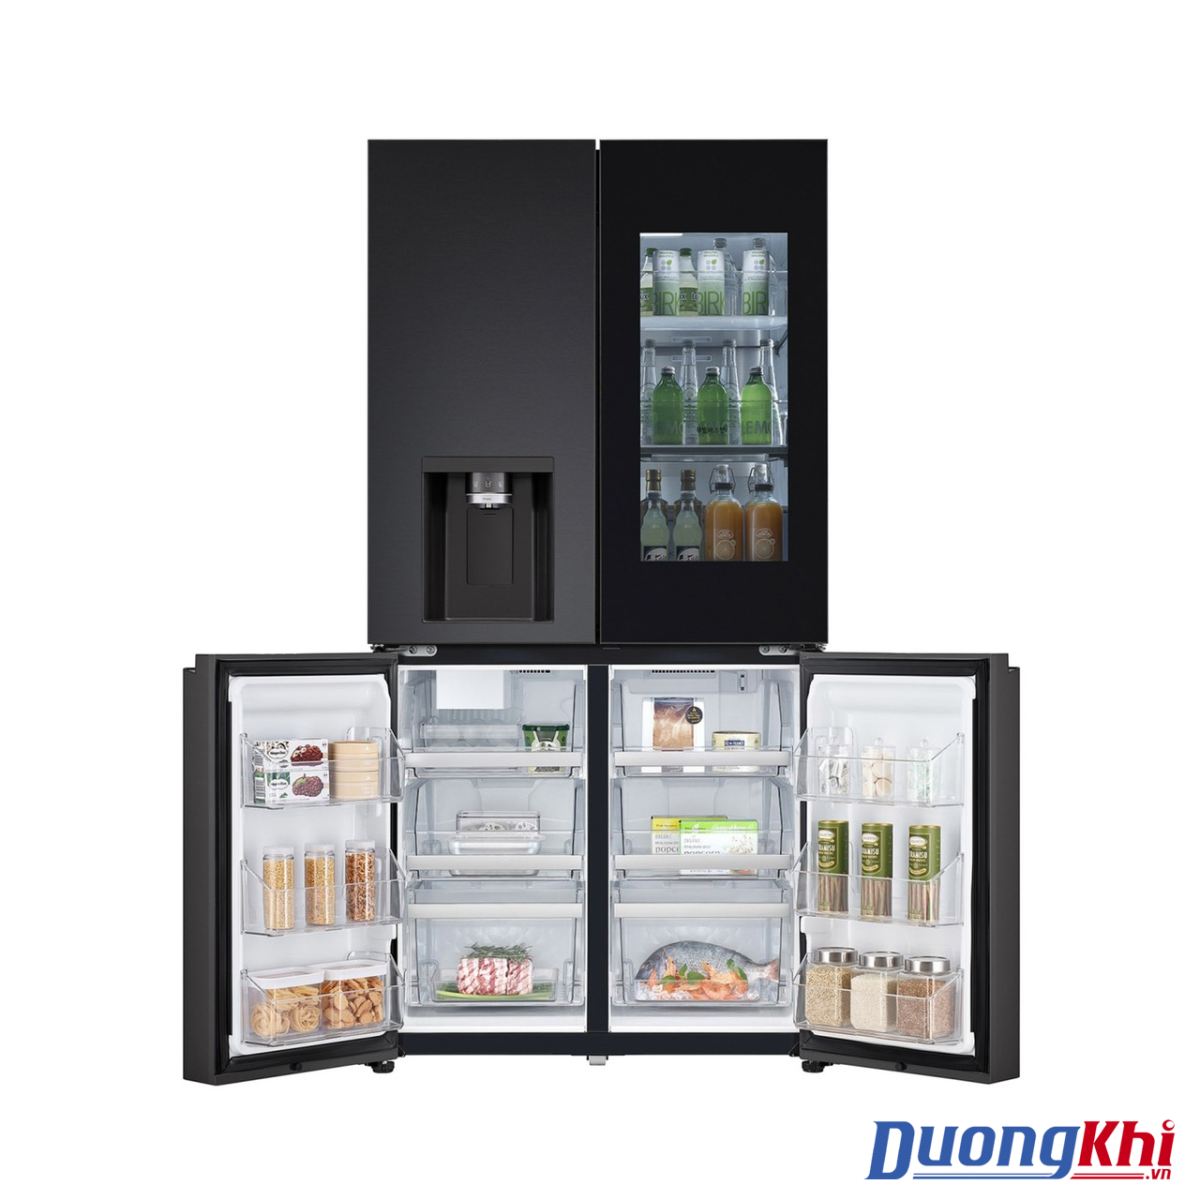 Tủ lạnh LG Dios Side by side màu xám 820L